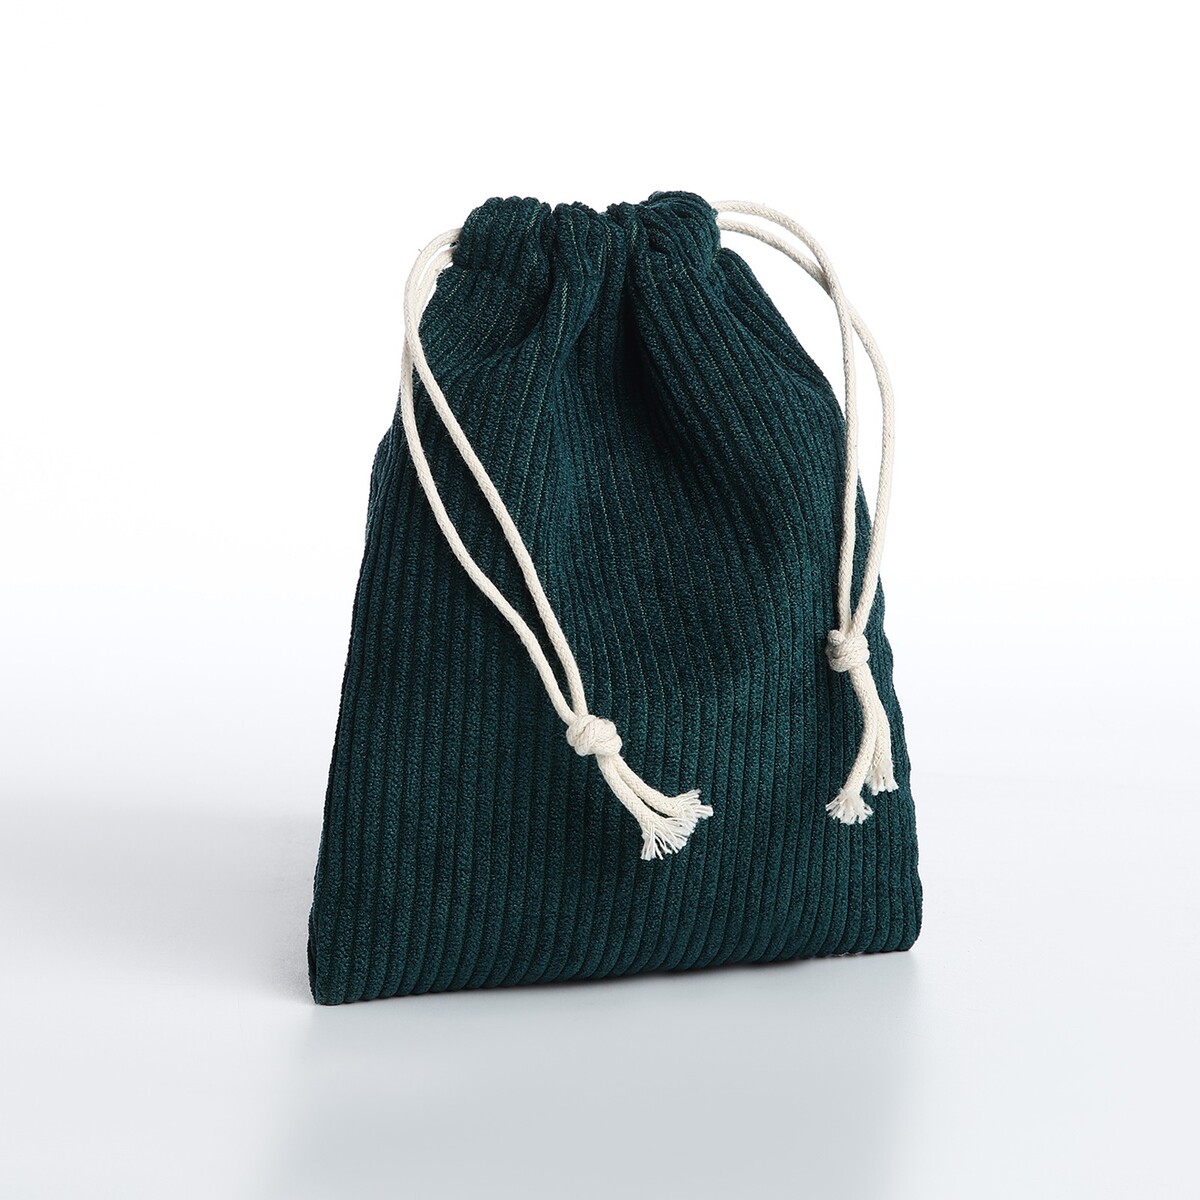 Косметичка - мешок с завязками, цвет зеленый косметичка мешок с завязками горчичный